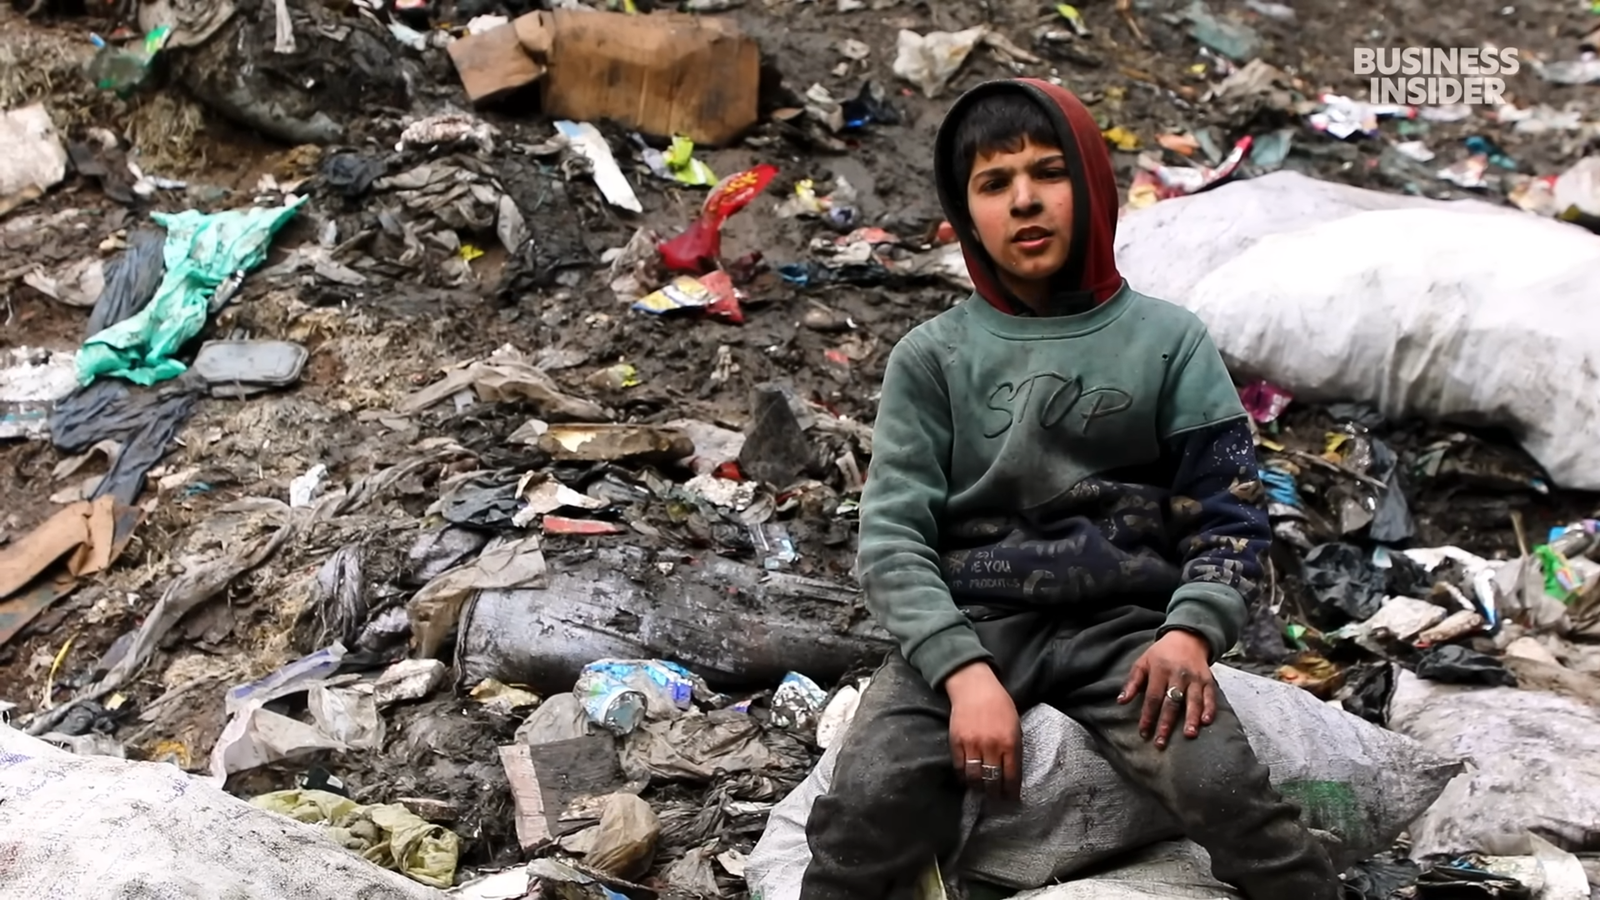 أطفال يعتاشون على جبل القمامة في إدلب...اقتصاد "وادي الموت"